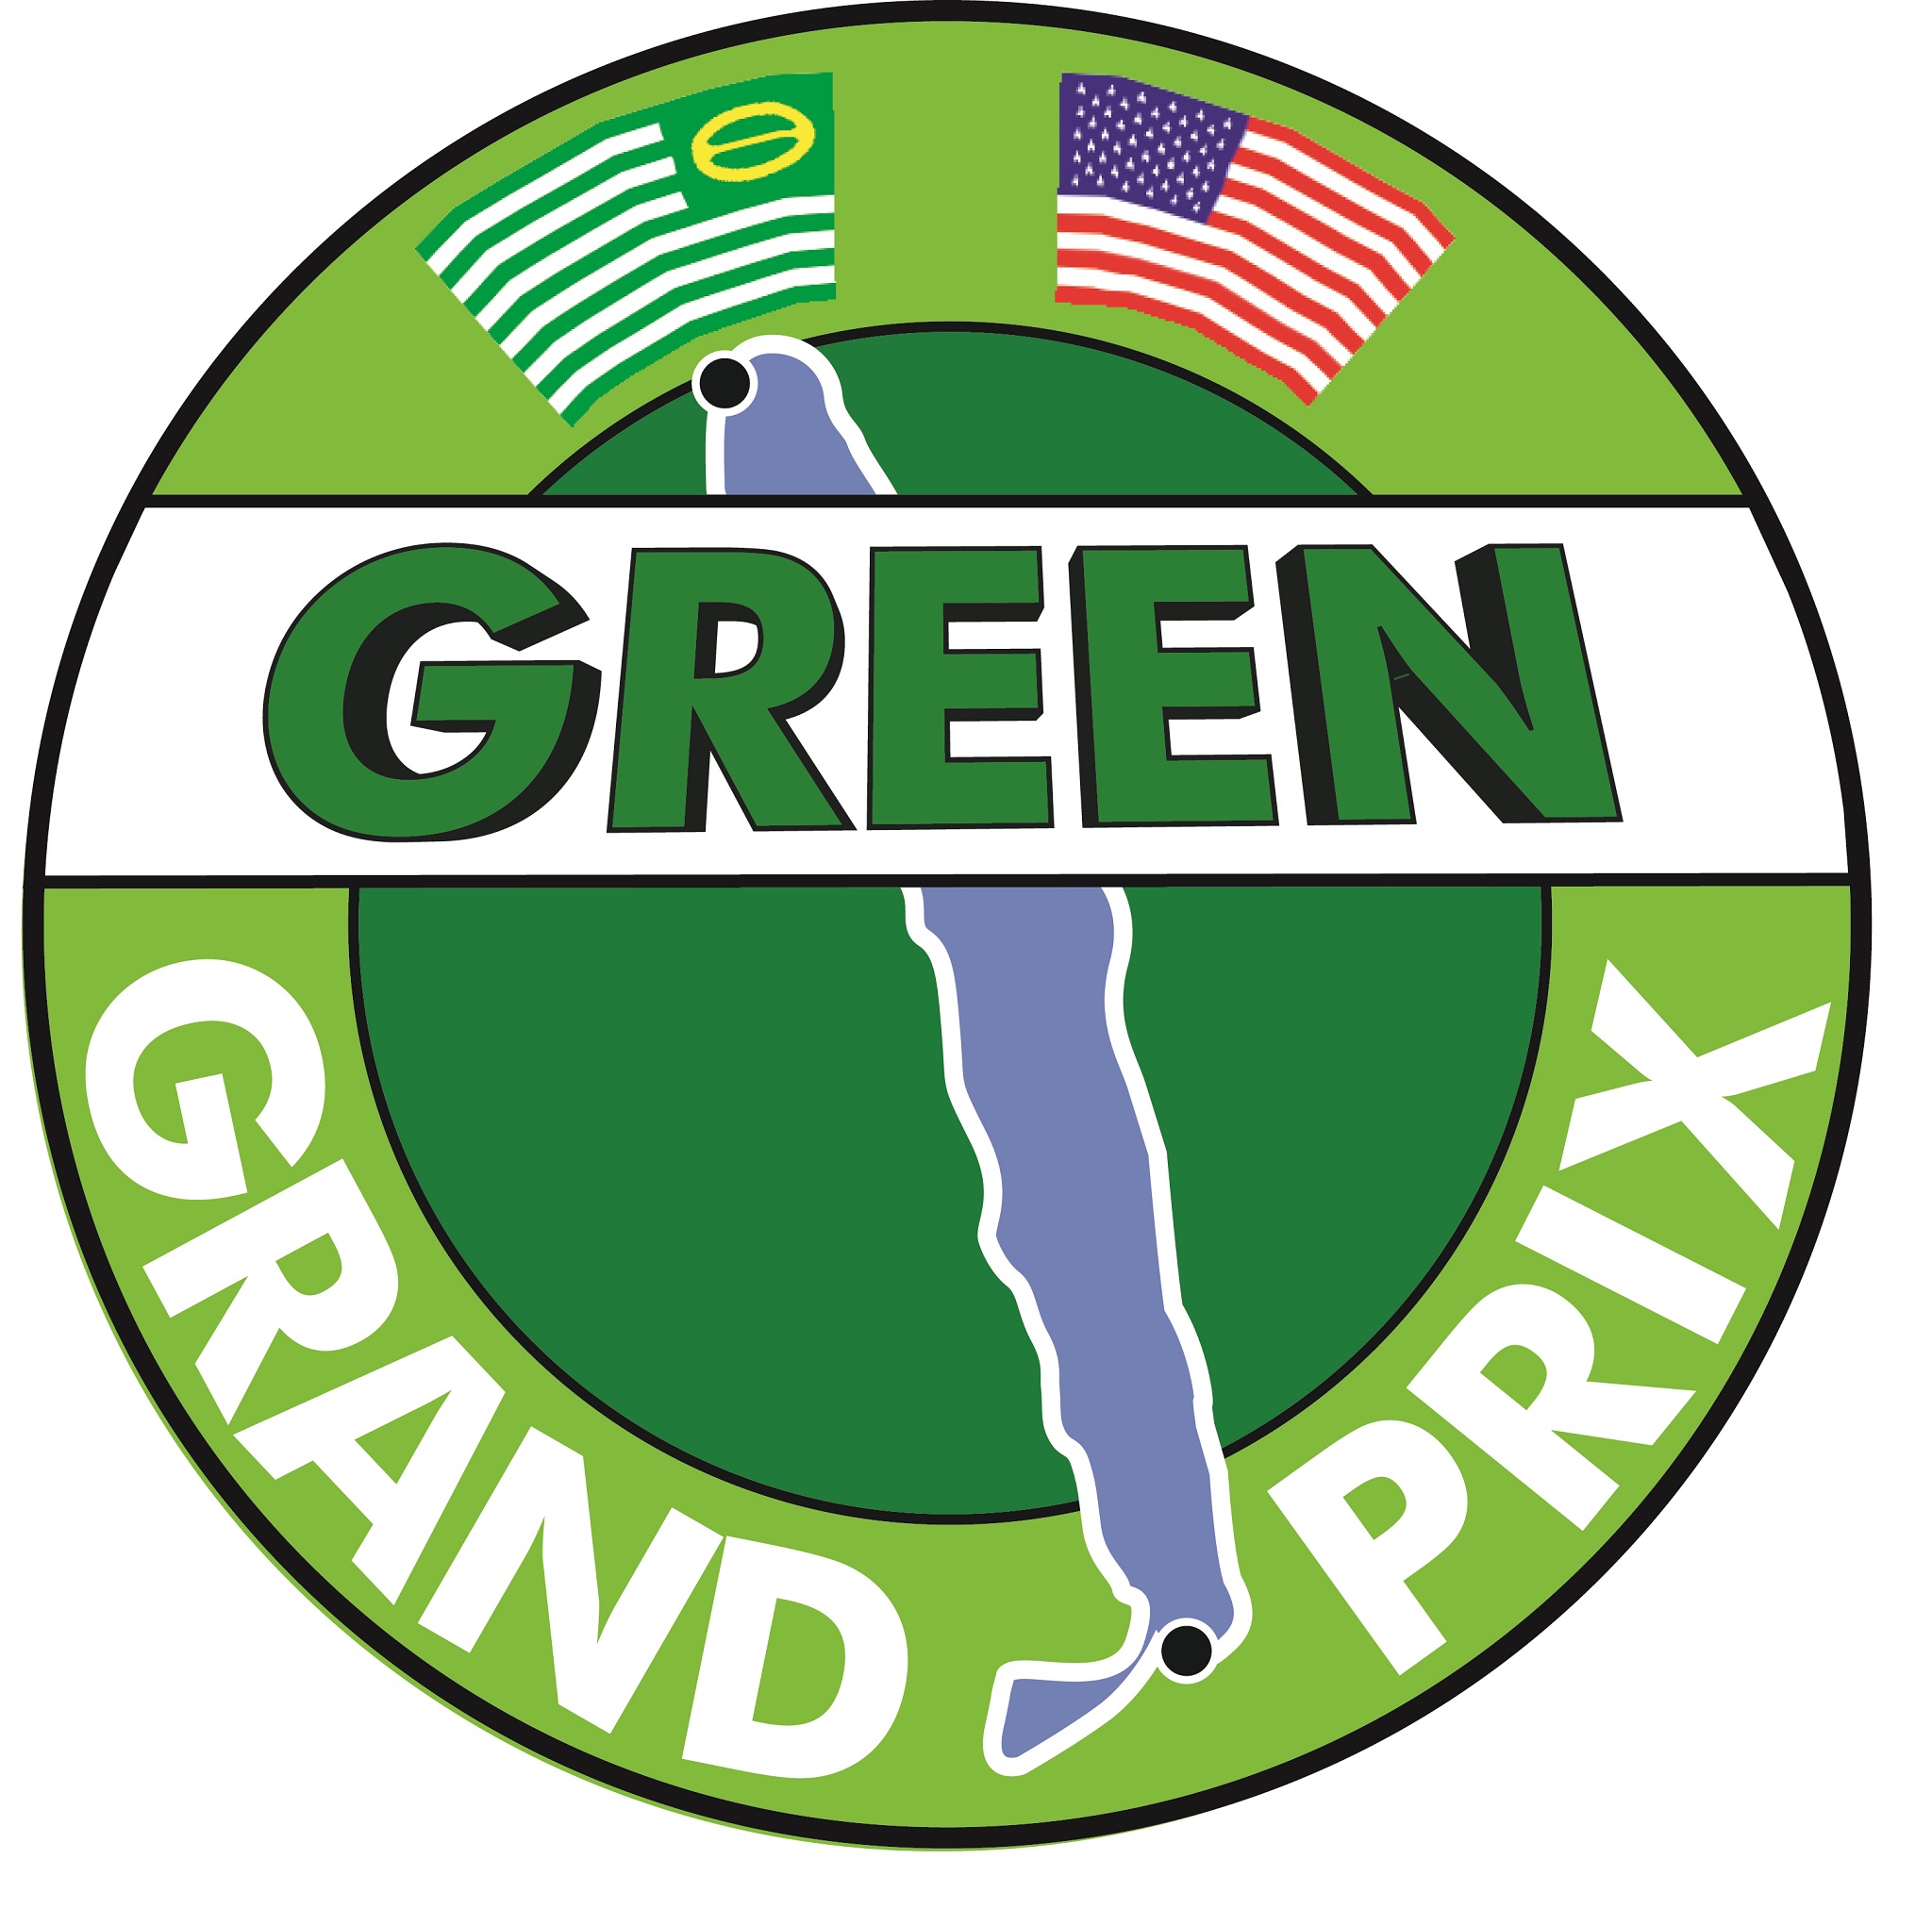 The Green Grand Prix